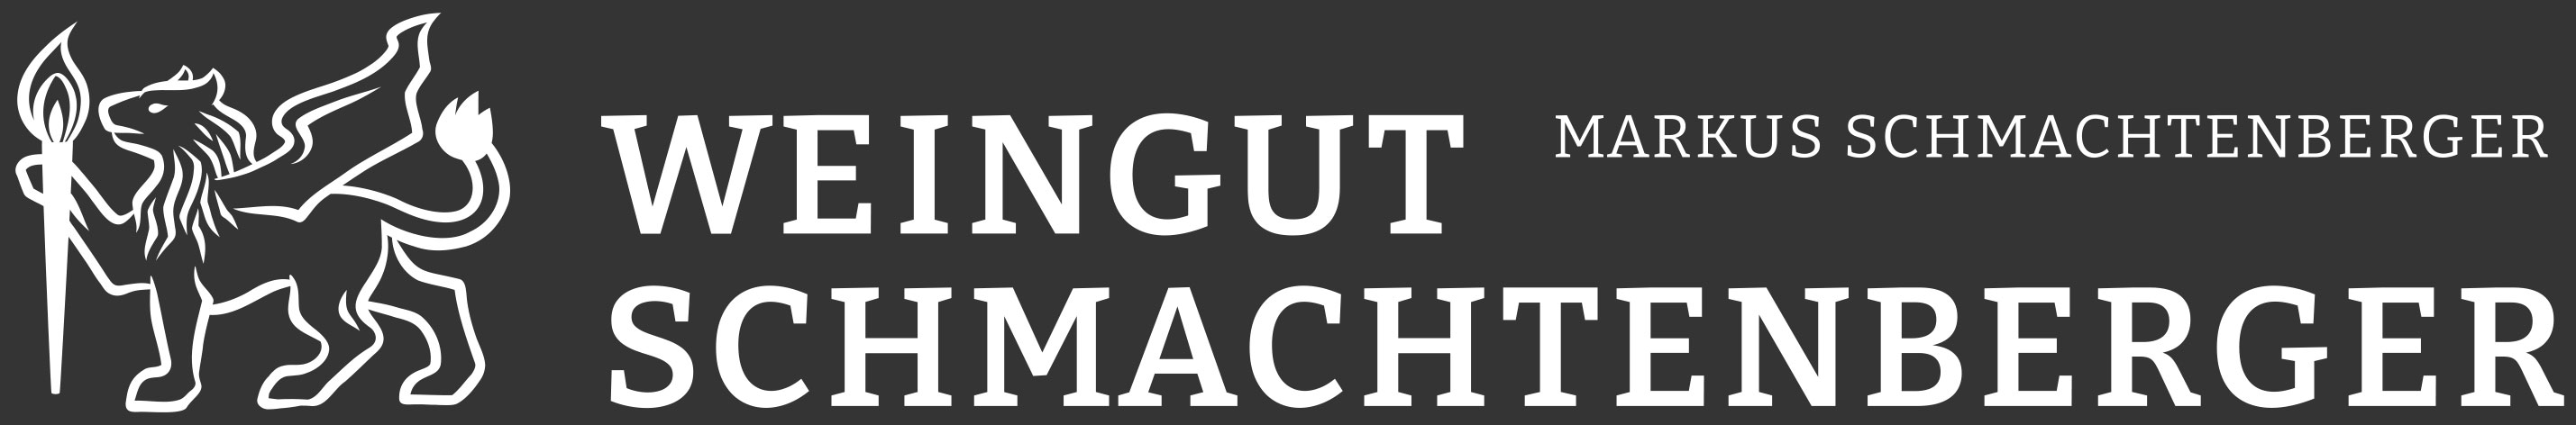 Weingut Schmachtenberger | Frankenwein aus Randersacker online bestellen -Logo